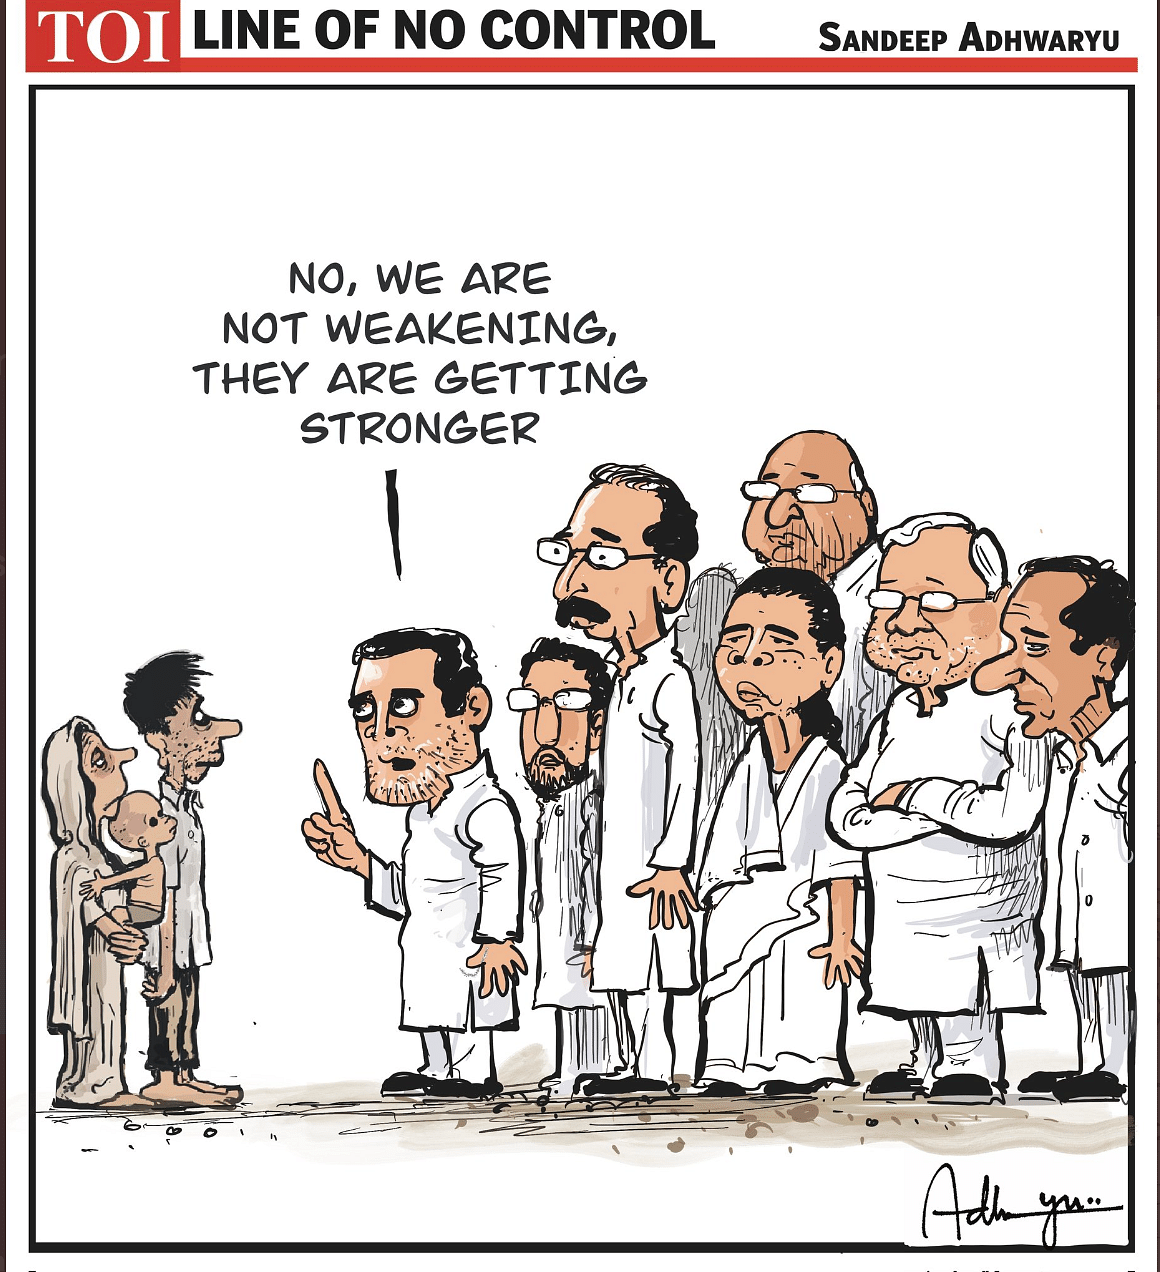 Sandeep Adhwaryu | Times of India | @CartoonistSan